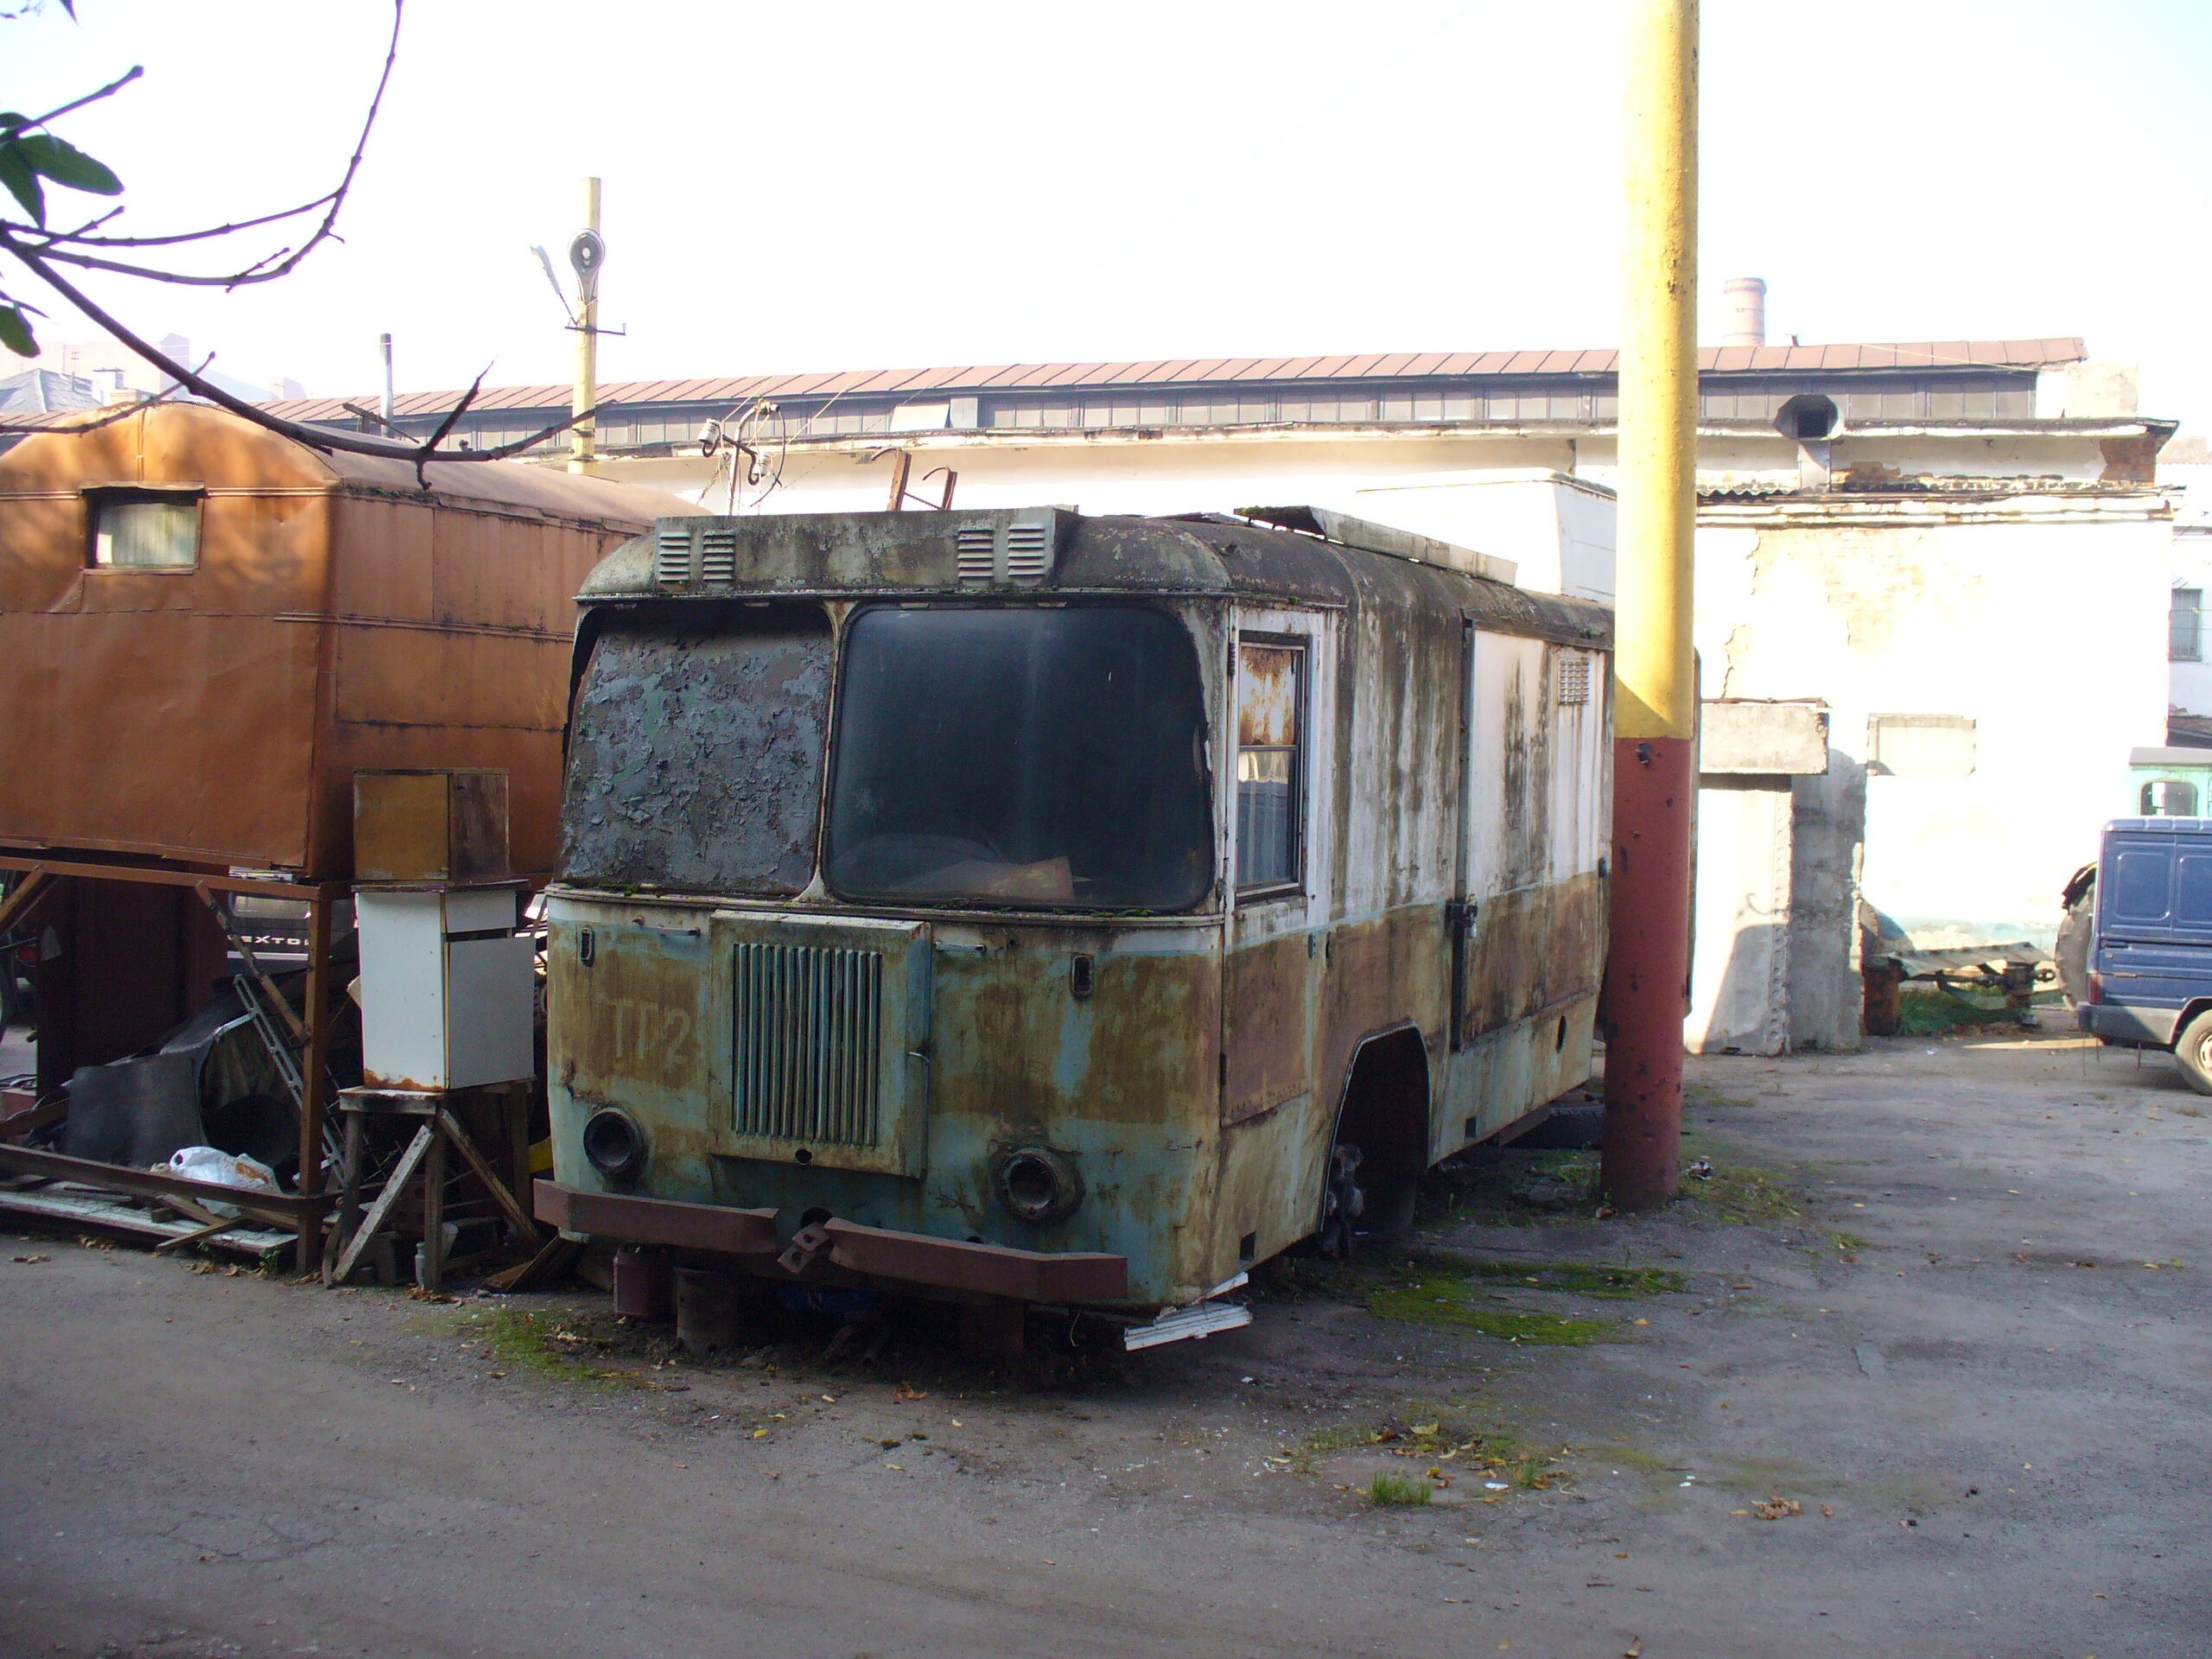 Грузовой троллейбус ТГ2 модели КТГ-1. Стоял в трамвайном ремонтном предприятии до сноса здания в середине 2000-х